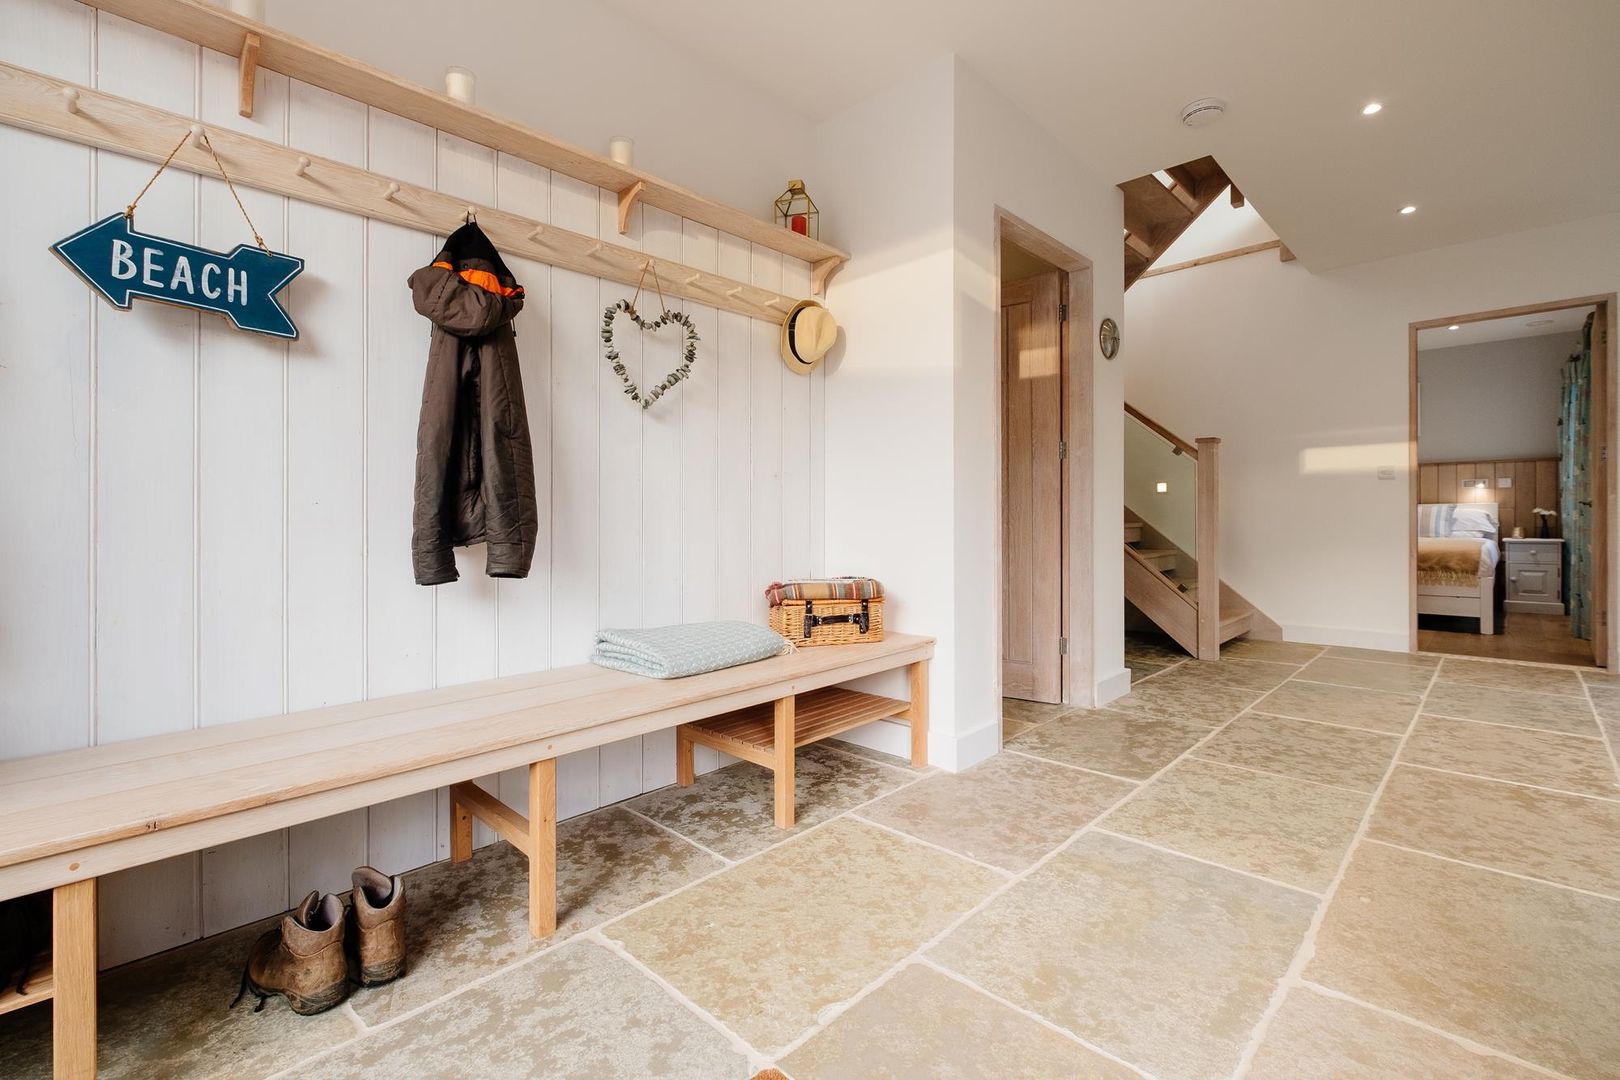 Treasure House, Polzeath | Cornwall, Perfect Stays Perfect Stays Pasillos, vestíbulos y escaleras rústicos Hallway,wooden,stone,rustic,holiday home,beach house